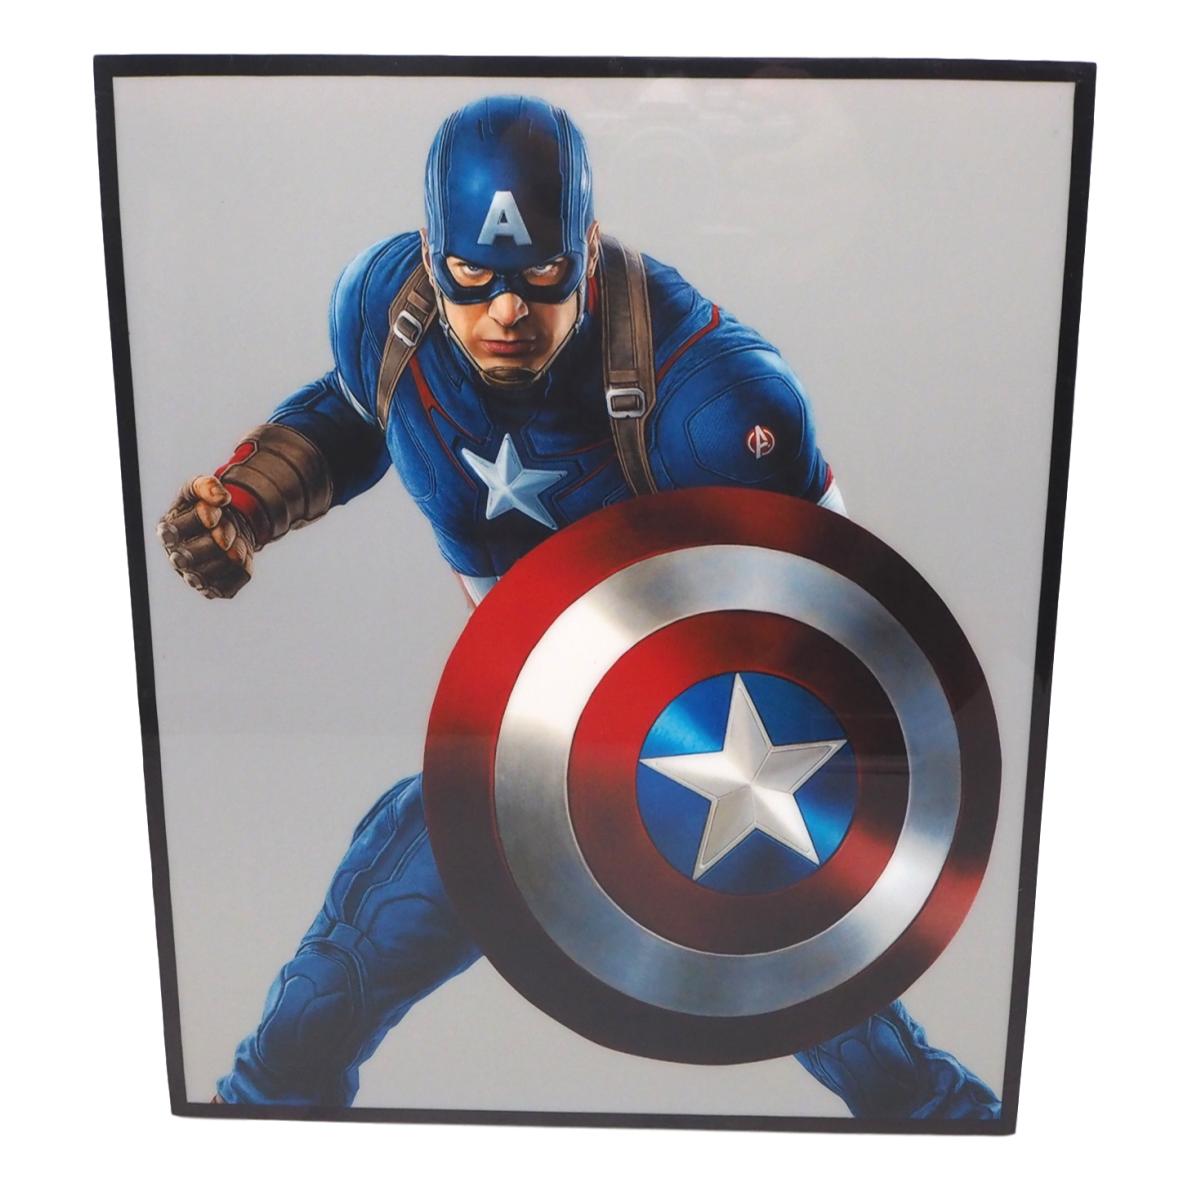 【送料無料】 キャプテン アメリカ (2) Captain America アートパネル 壁掛け 据え置き 壁掛けフック付き アーティスト POPパネル インテリア アートフレーム ポスター cool クール 面白い かっこいい アート 雑貨 カフェ リビング 額付き 額縁 オシャレ マーベル Marvel